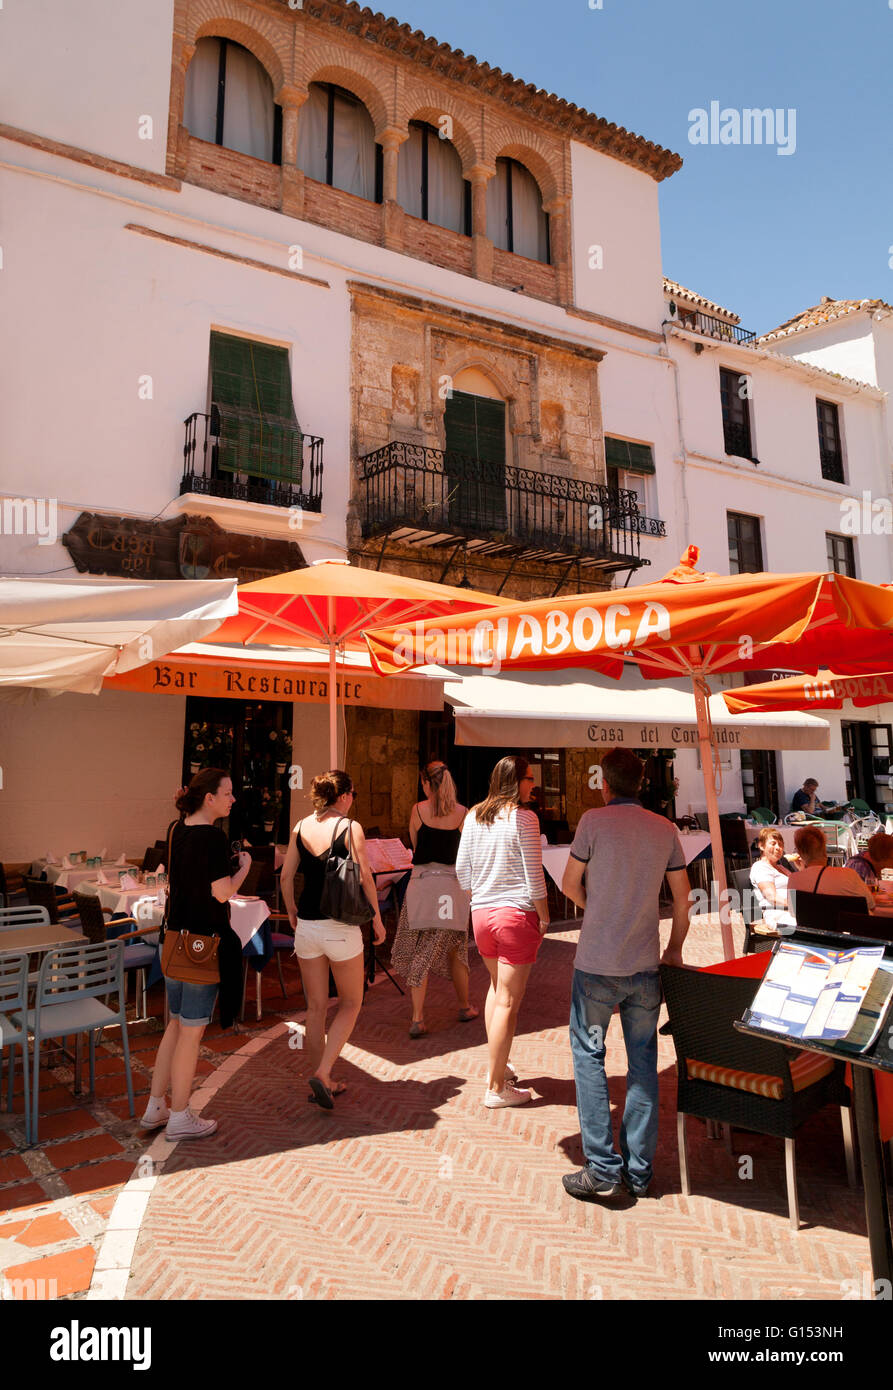 Les gens qui entrent dans un café, la Plaza de los Naranjos ( carré orange ), vieille ville de Marbella, Costa del Sol, Andalousie, Espagne Banque D'Images